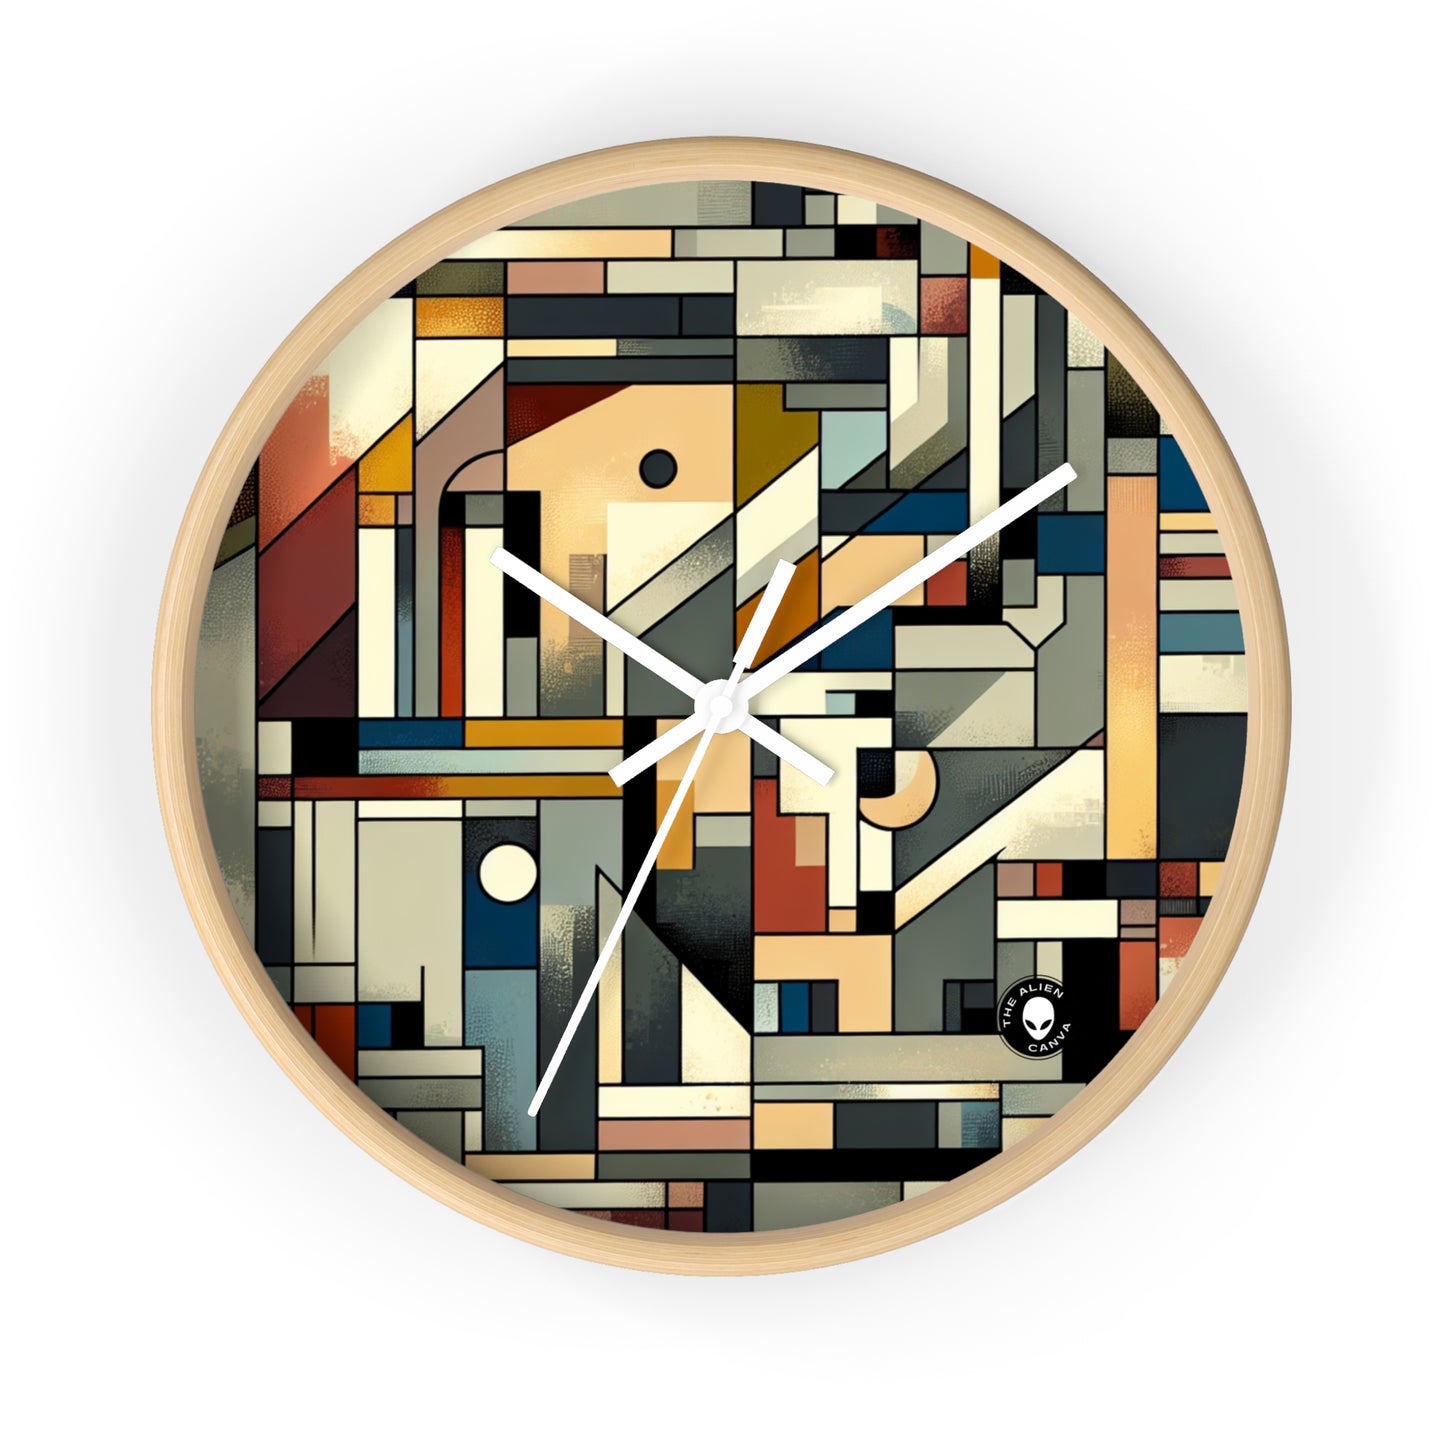 "Paisaje urbano cubista: energía urbana" - El reloj de pared alienígena Cubismo sintético